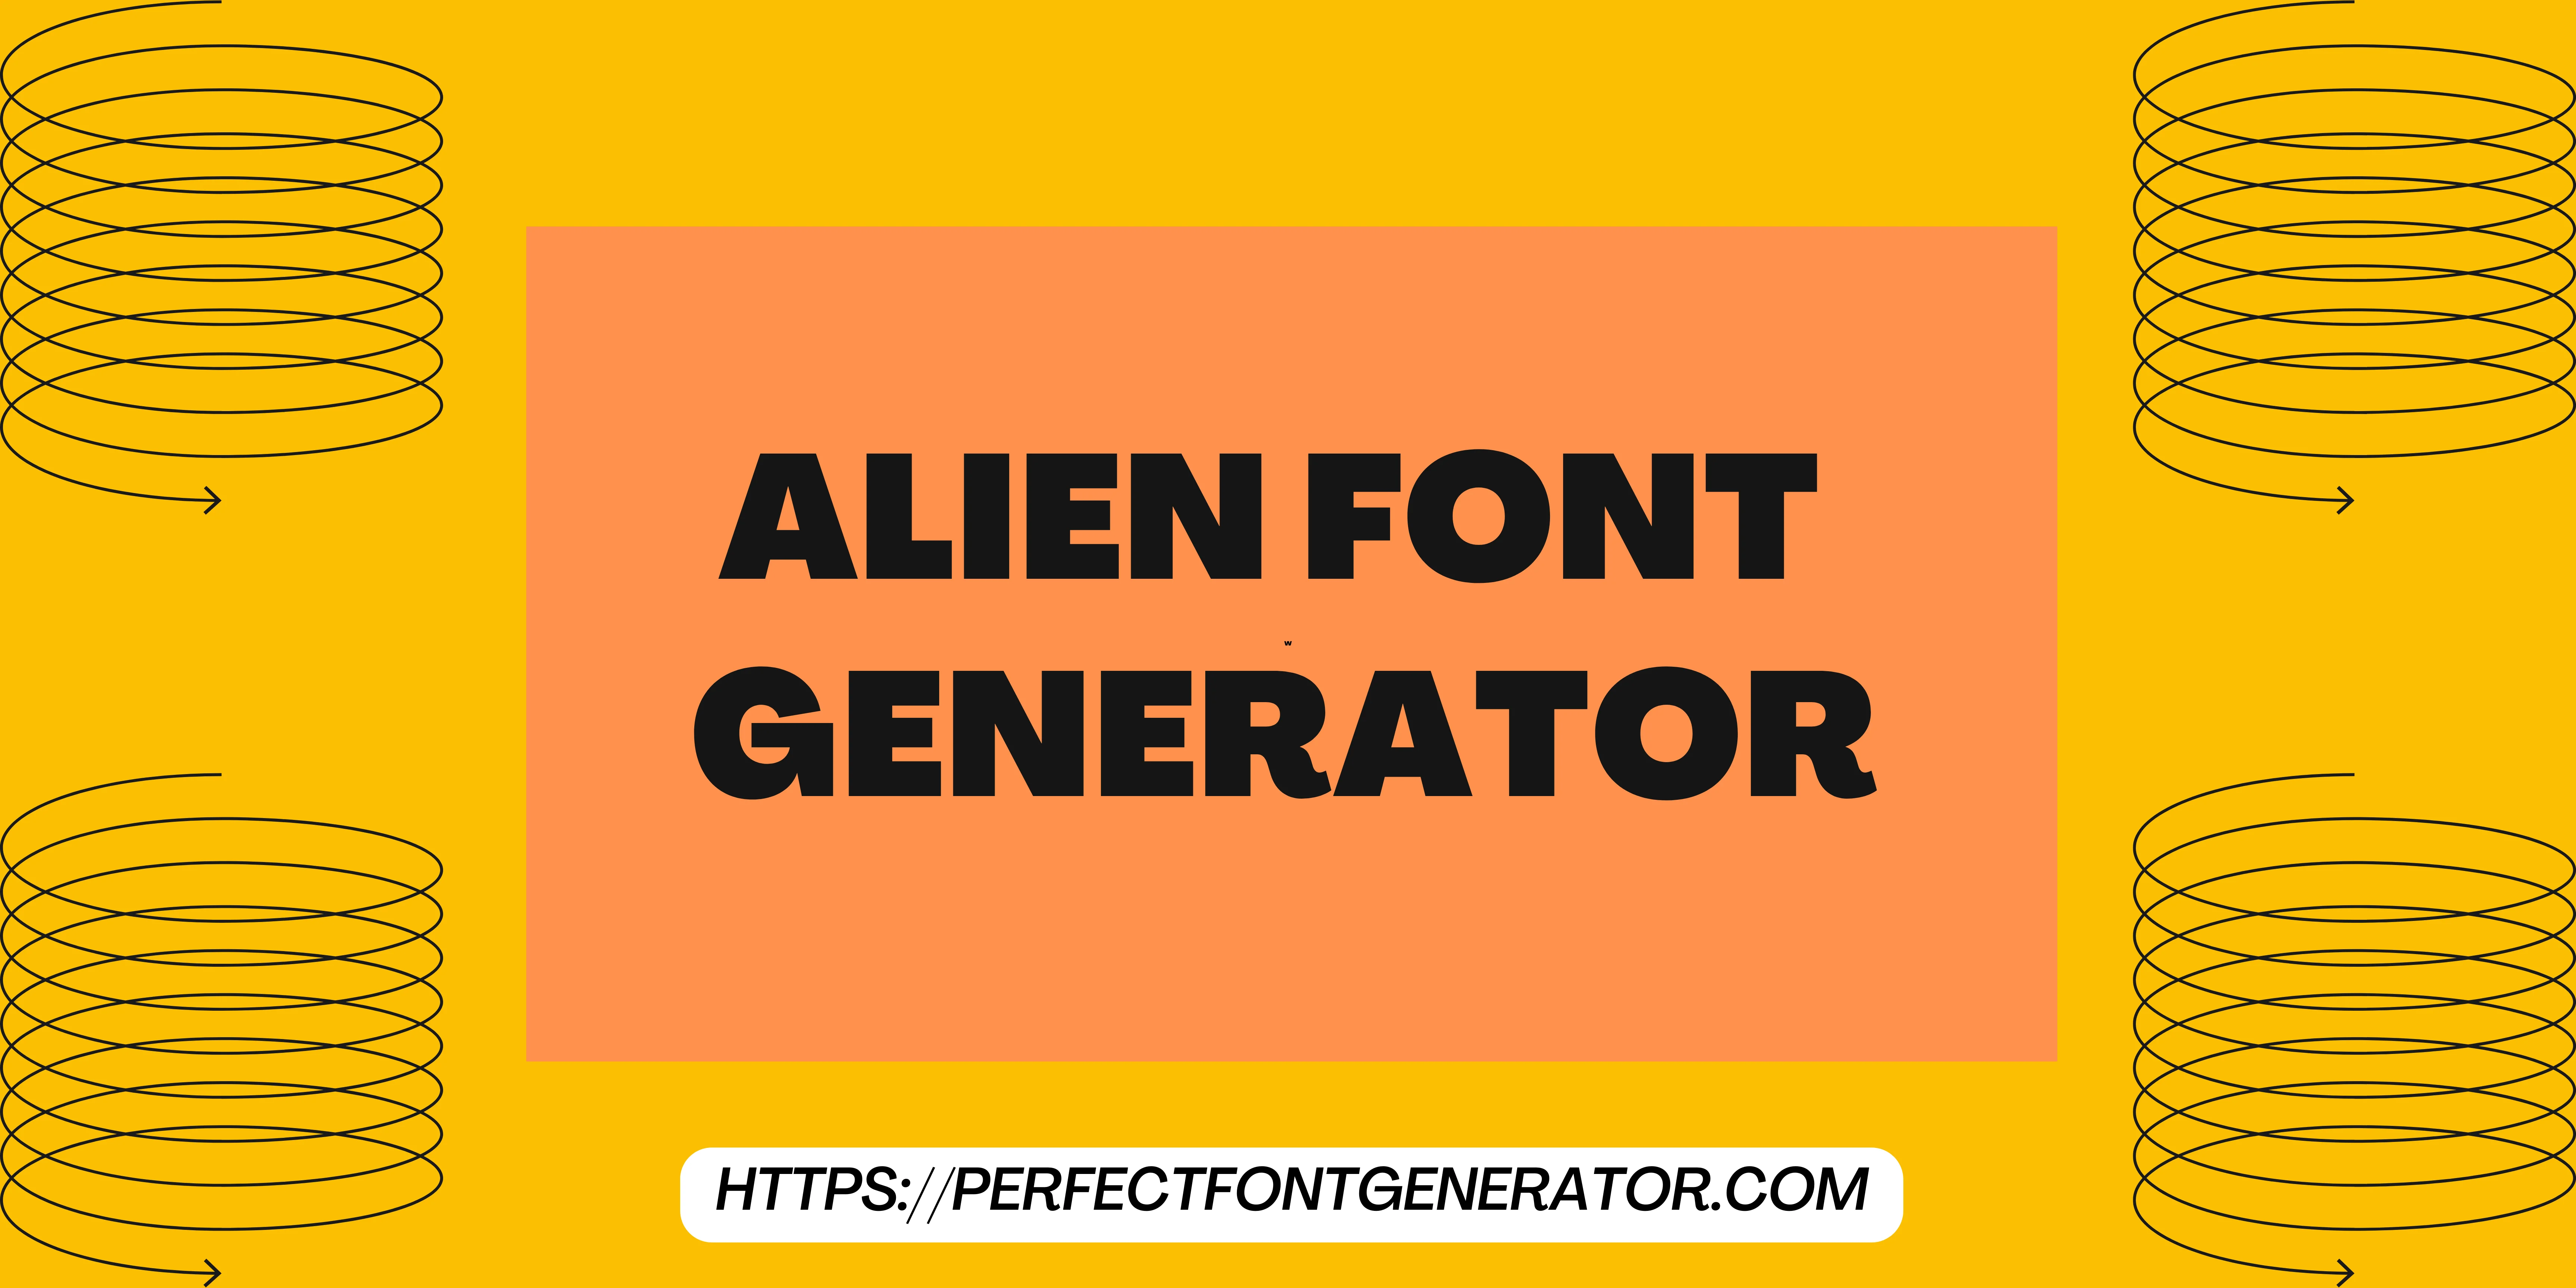 alien font generator